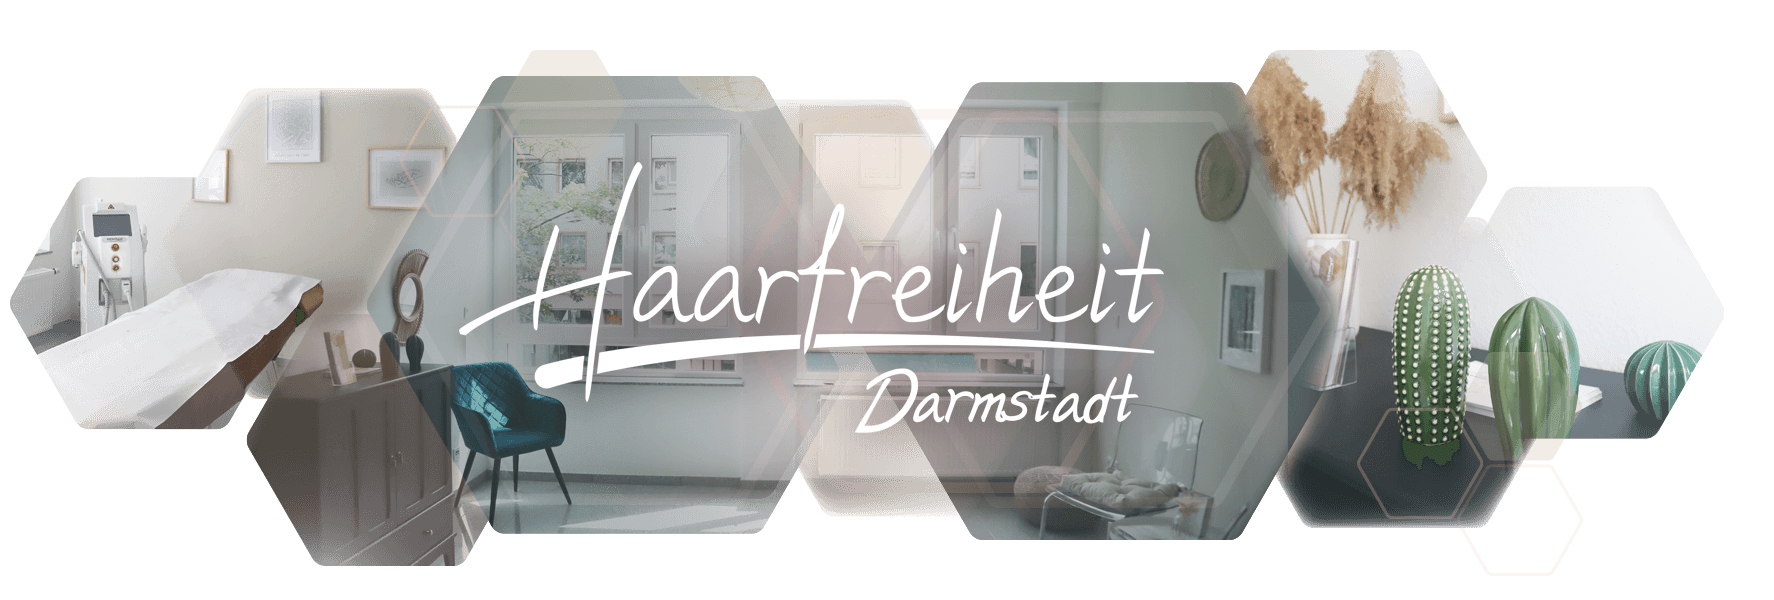 Photo collages rooms Haarfreiheit Darmstadt